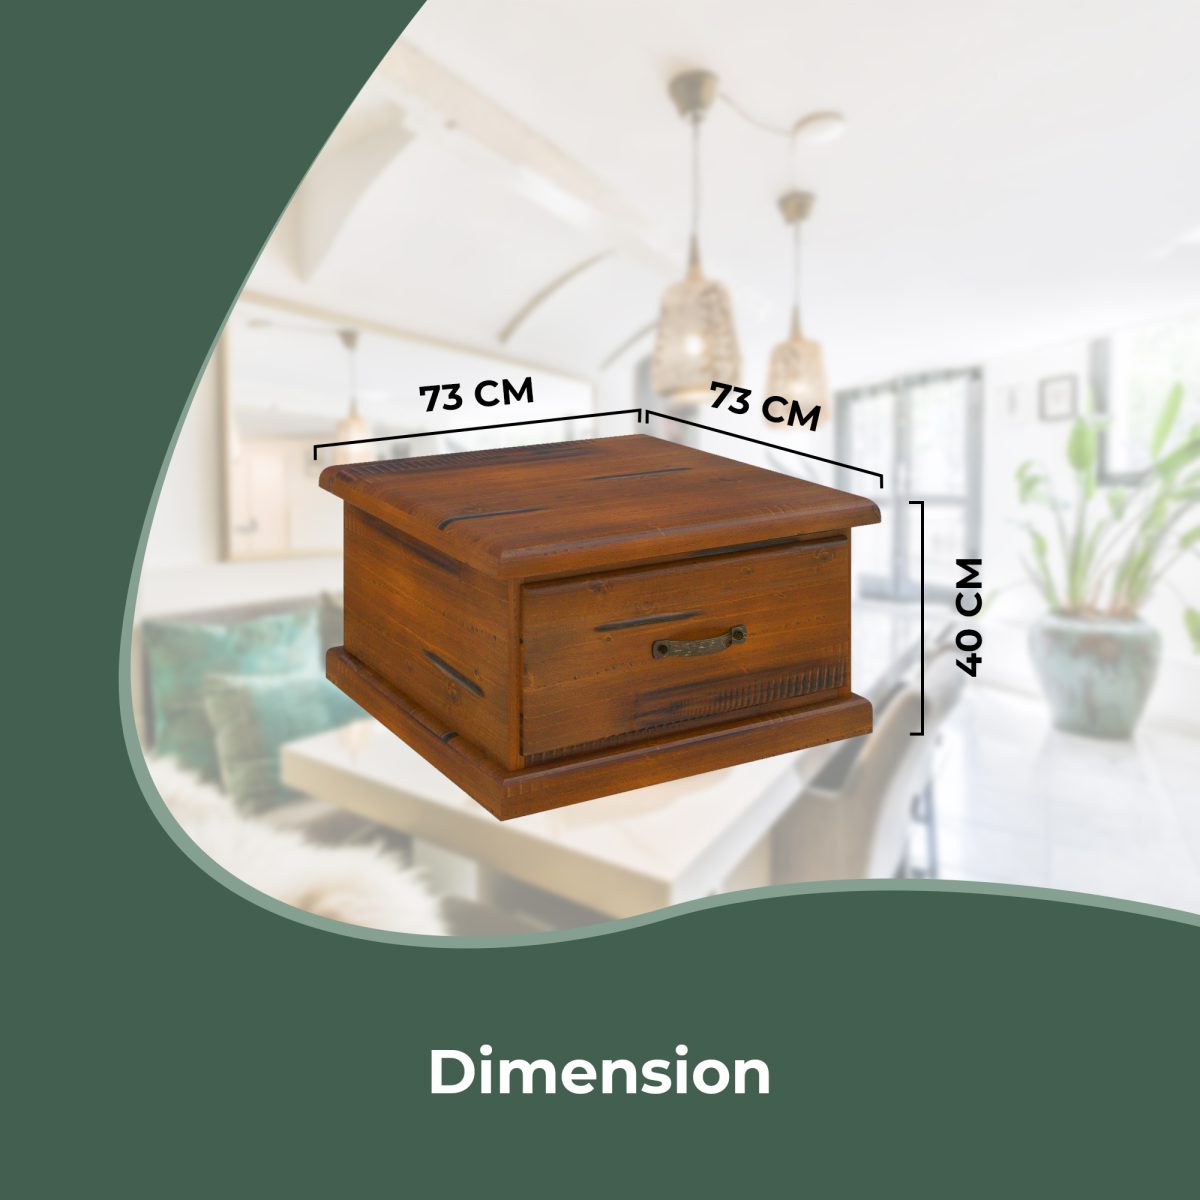 Umber Lamp Table Solid Pine Wood Coffee Side Desk Sofa End – Dark Brown – 1 Drawer